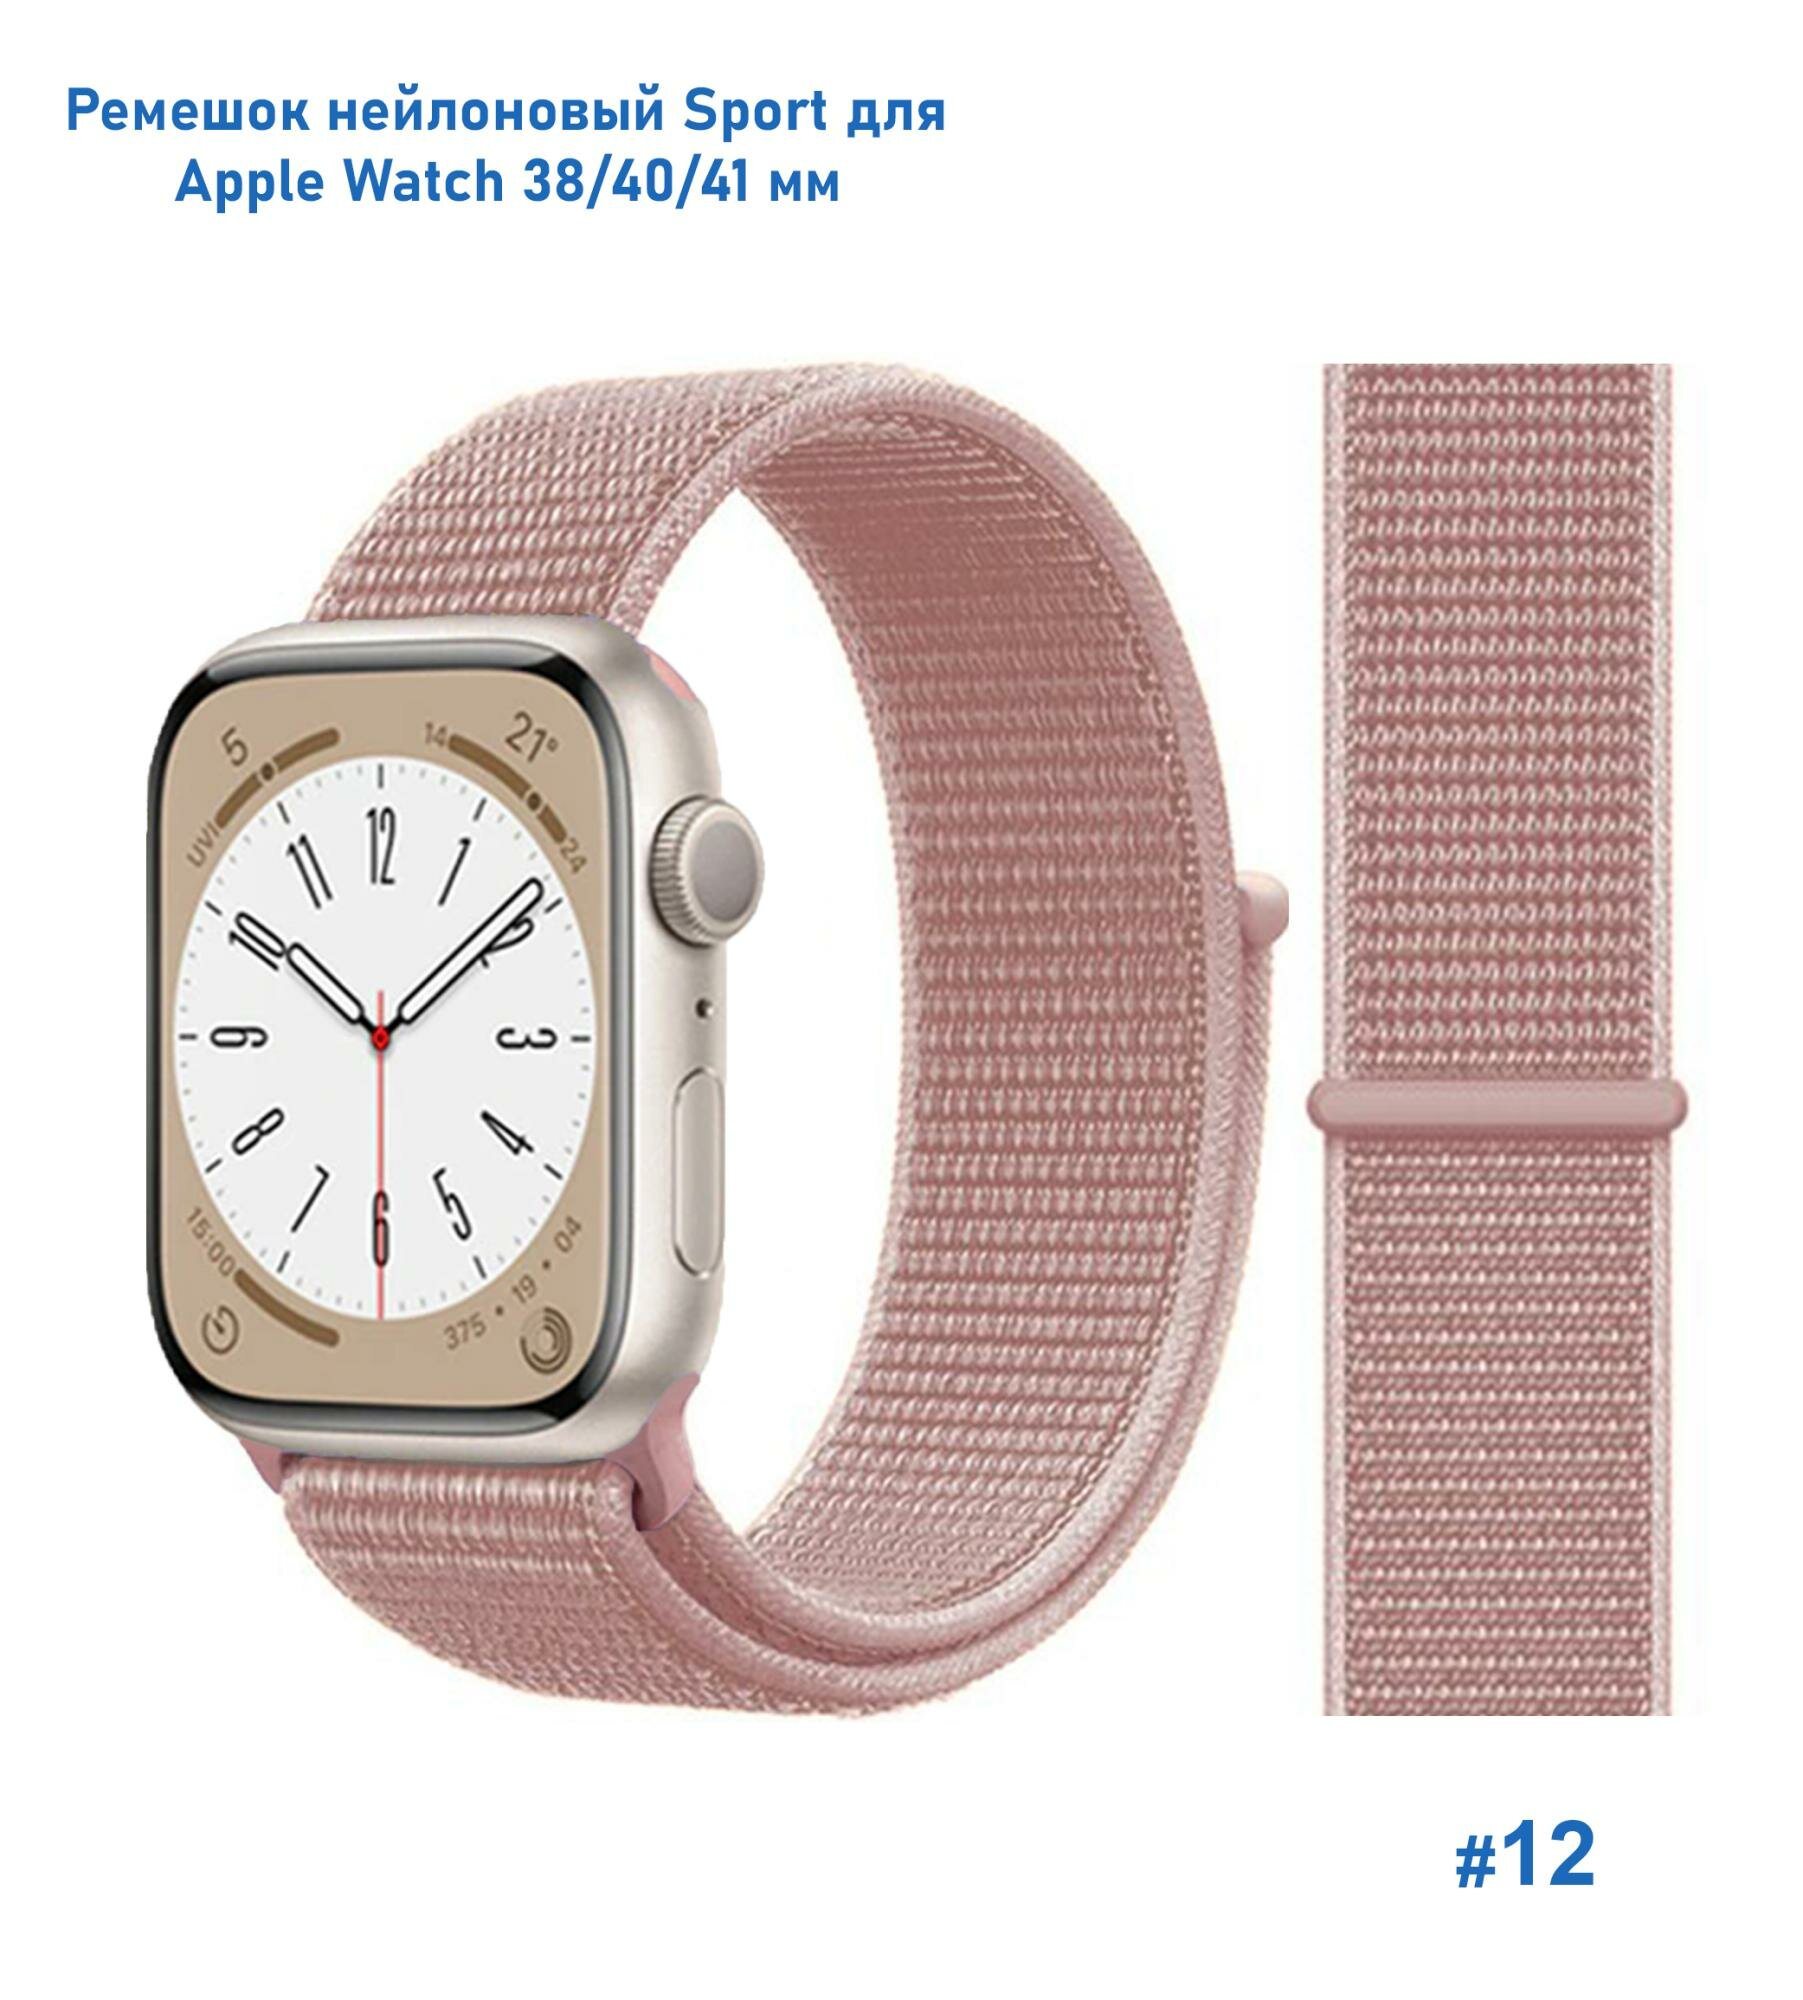 Ремешок нейлоновый Sport для Apple Watch 38/40/41 мм, на липучке, порошково-розовый (12)